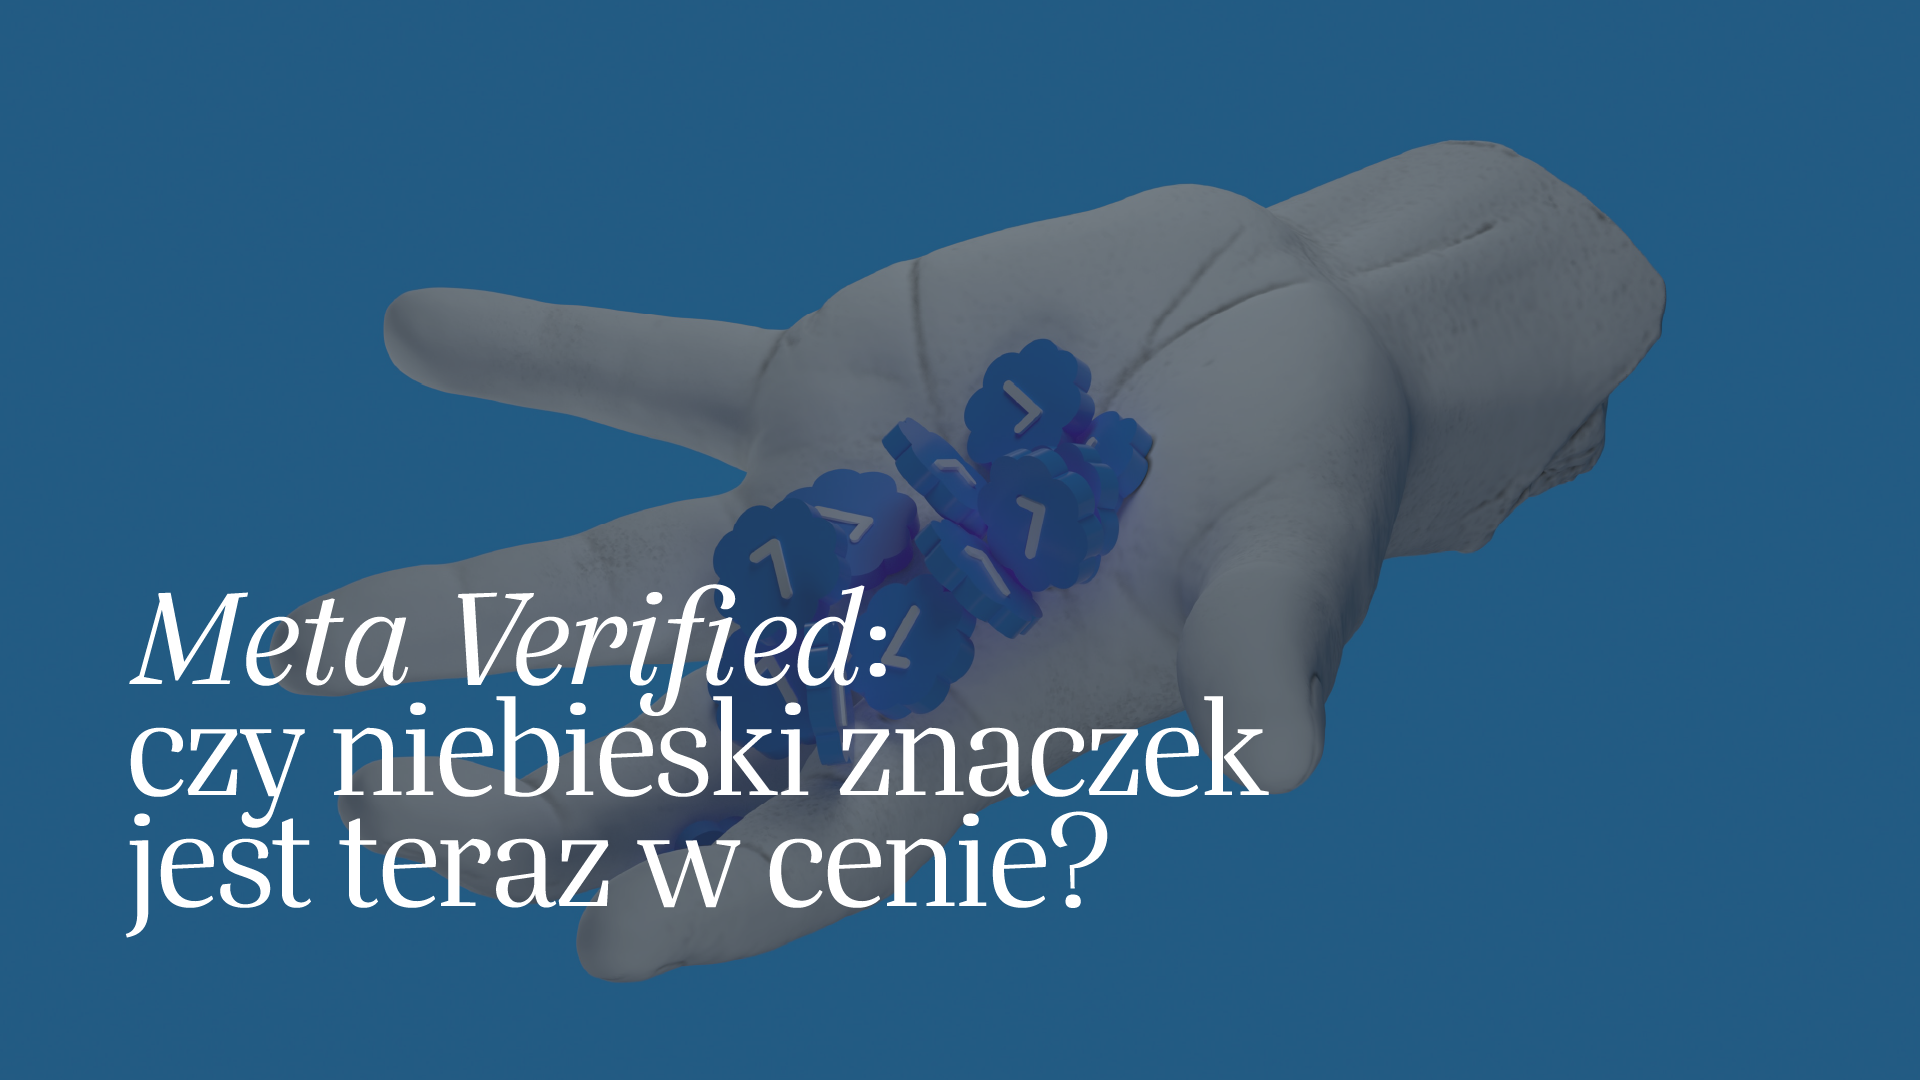 Read more about the article Meta Verified: czy niebieski znaczek jest teraz w cenie?